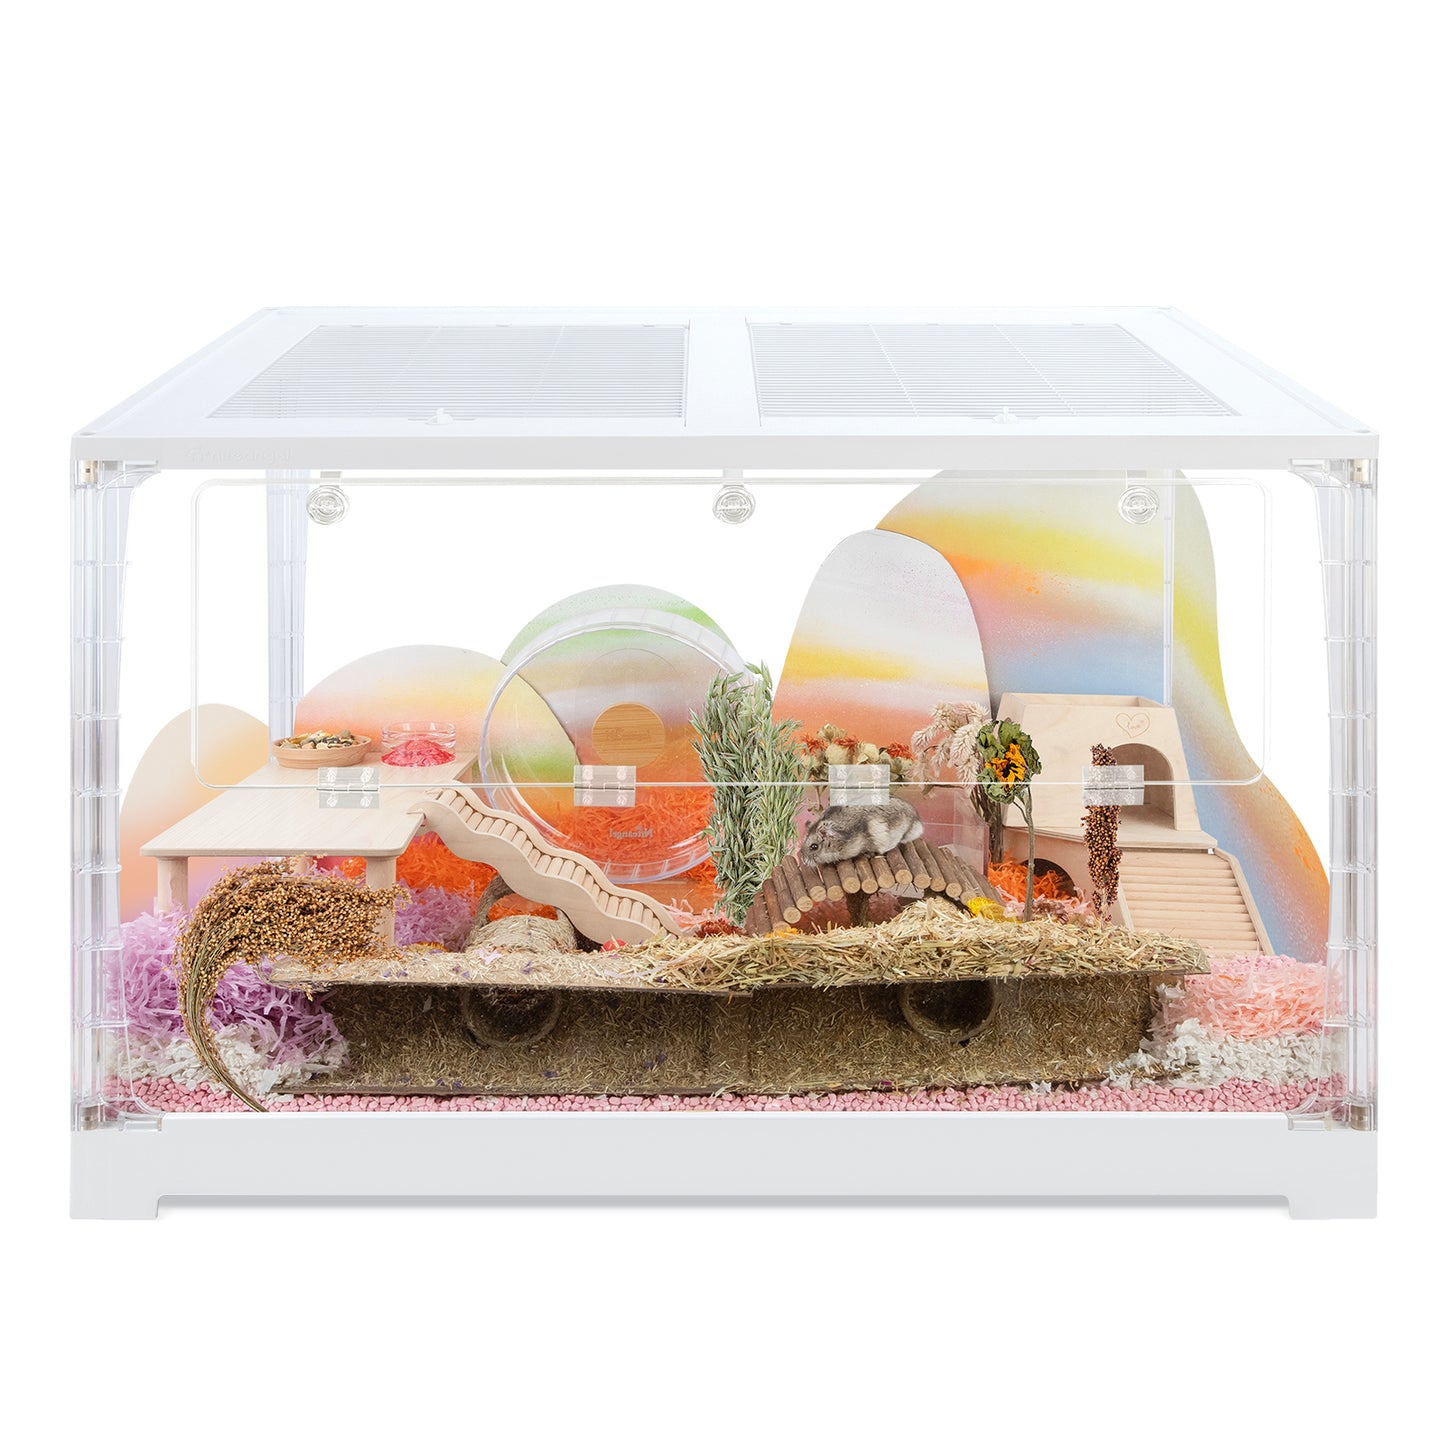 Niteangel Stacker Series Cage à hamster – Empilable et grand boîtier en verre pour hamster, gerbilles, souris, lemming, dégus ou autres animaux de petite taille